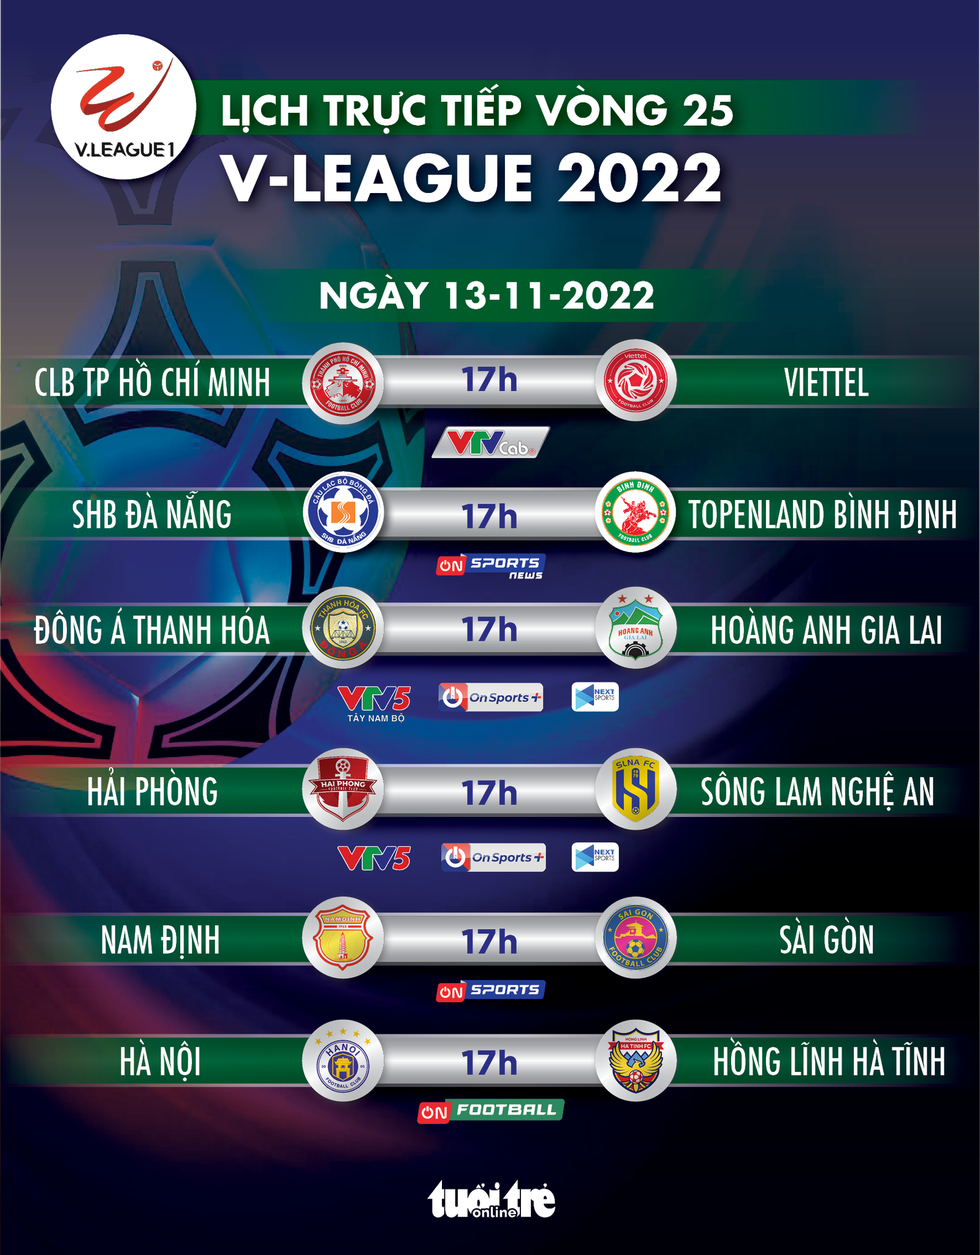 Lịch trực tiếp vòng 25 V-League 2022: Chung kết ngược; Hà Nội vô địch? - Ảnh 1.